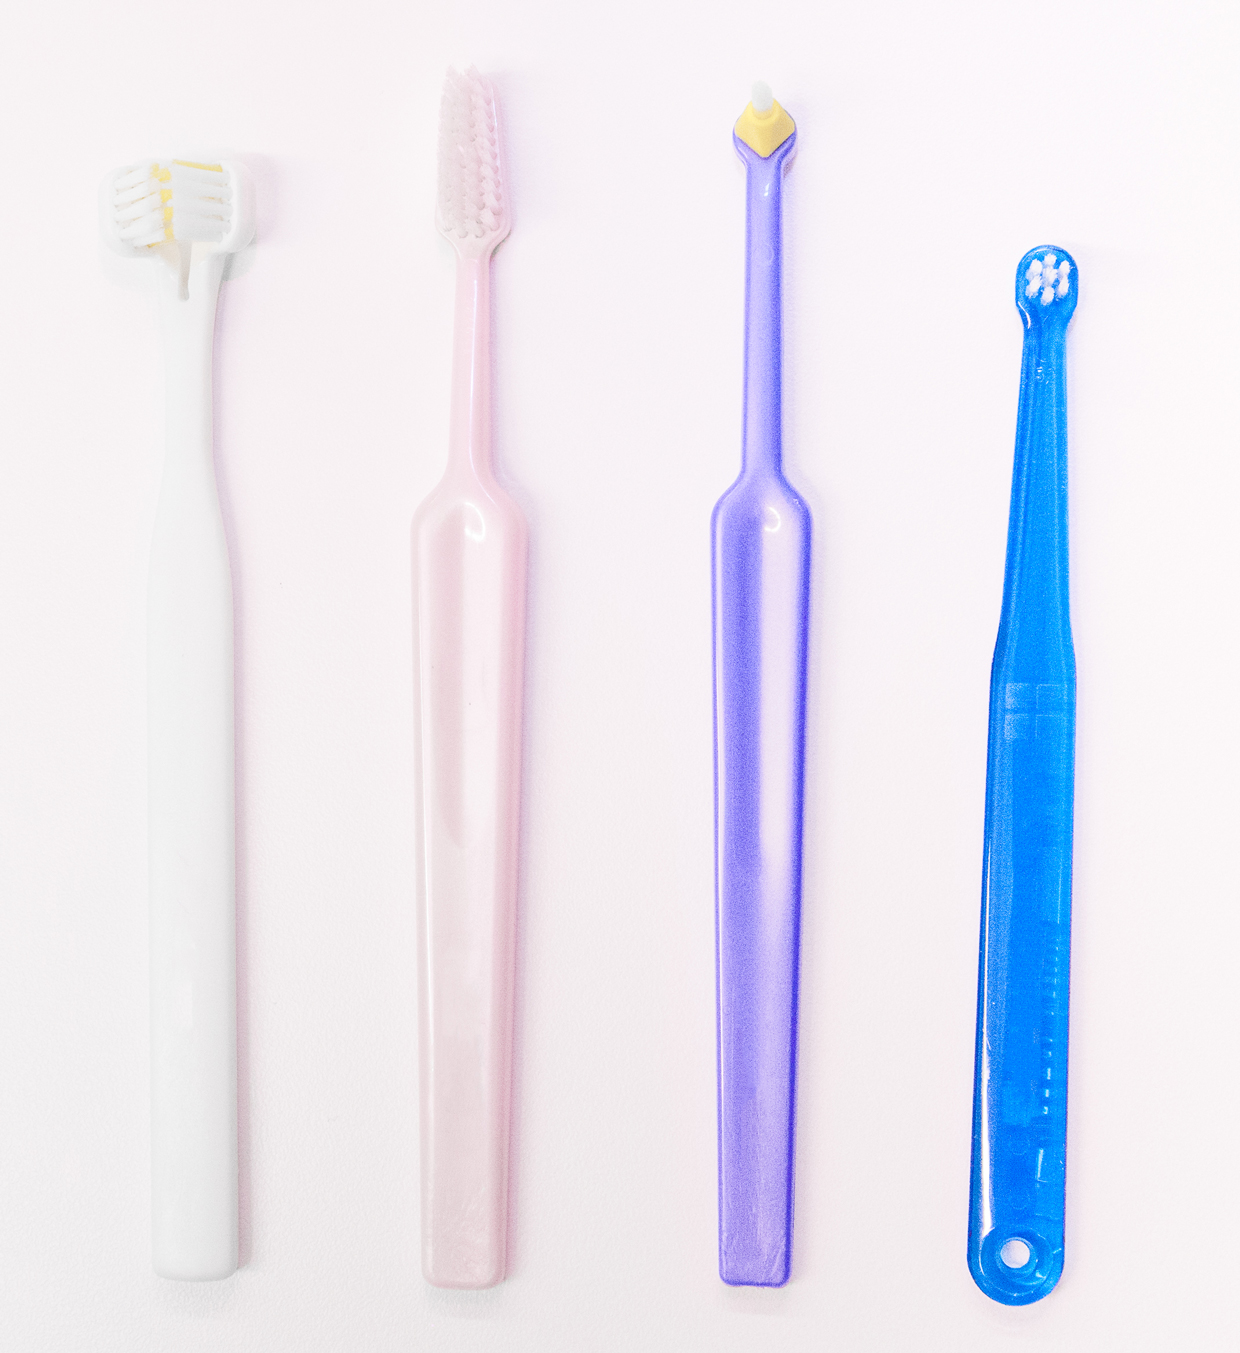 Bild som visar olika typer av tandborstar